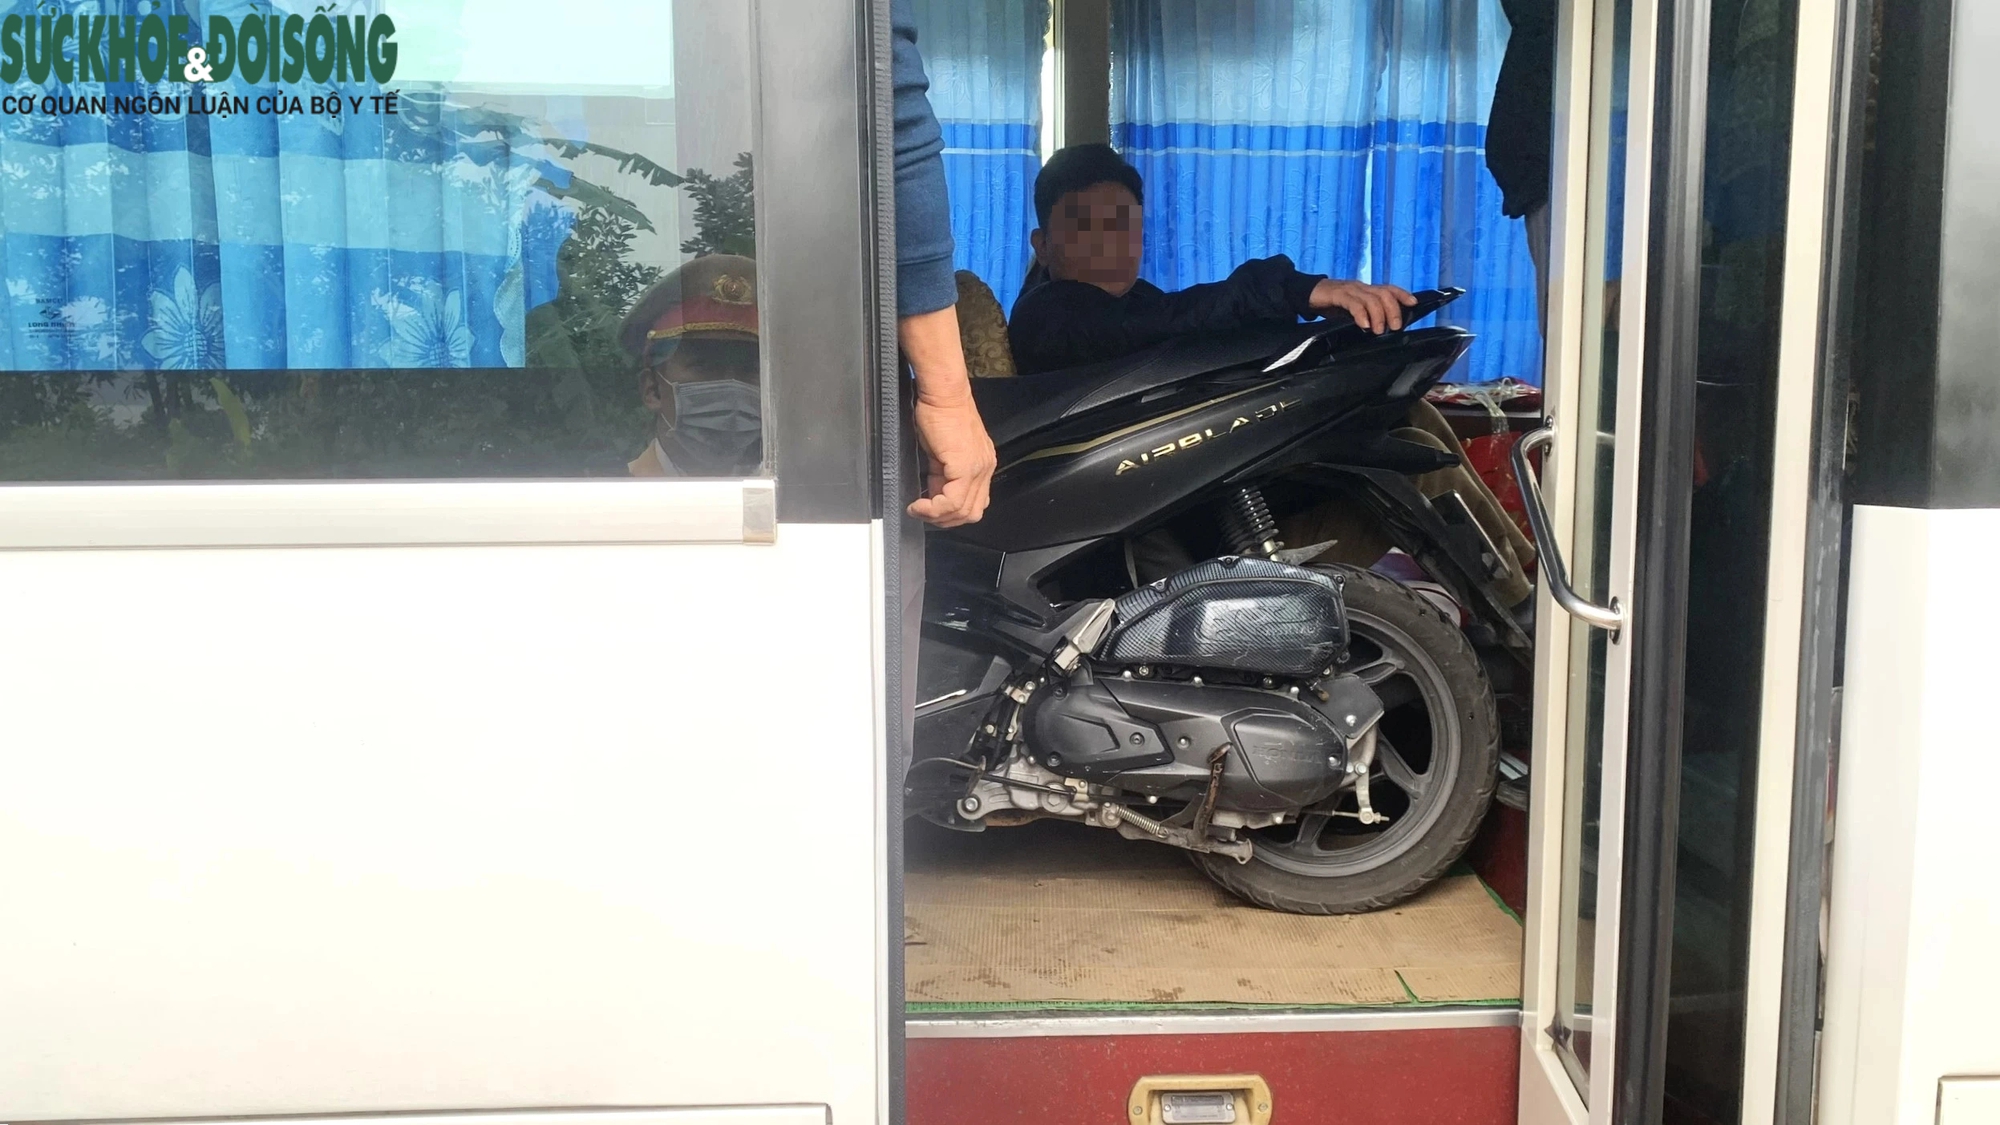 'Khám' xe khách dịp cận Tết, phát hiện tài xế chở cả xe máy trong khoang chở người- Ảnh 12.